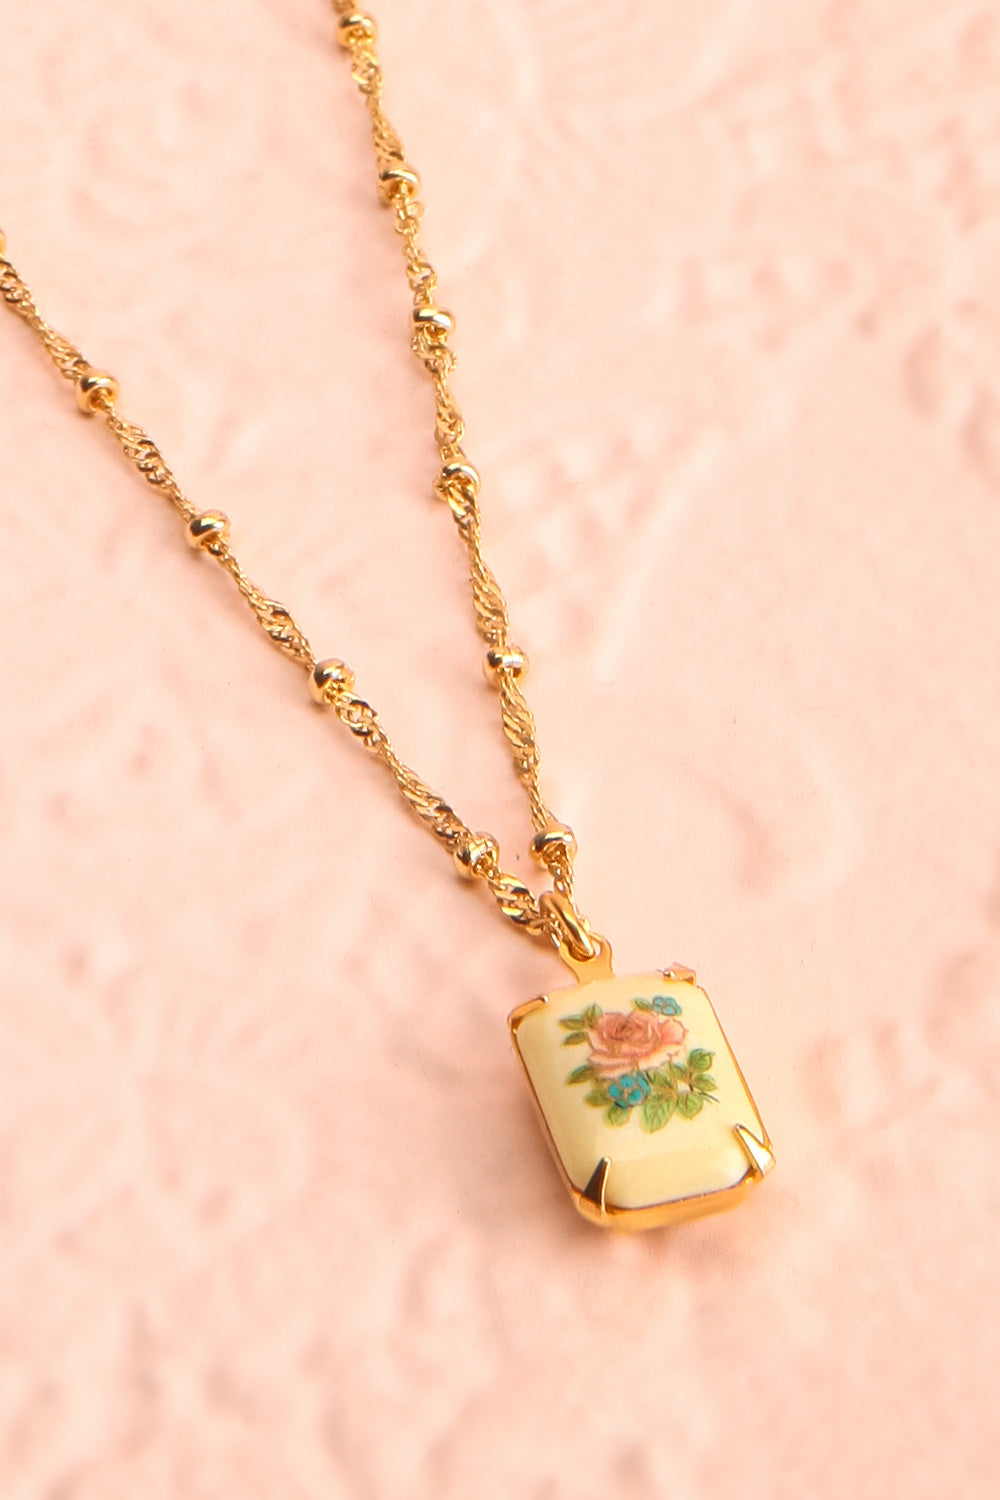 Mae West Rose Dainty Golden Floral Pendant Necklace | Boutique 1861 2